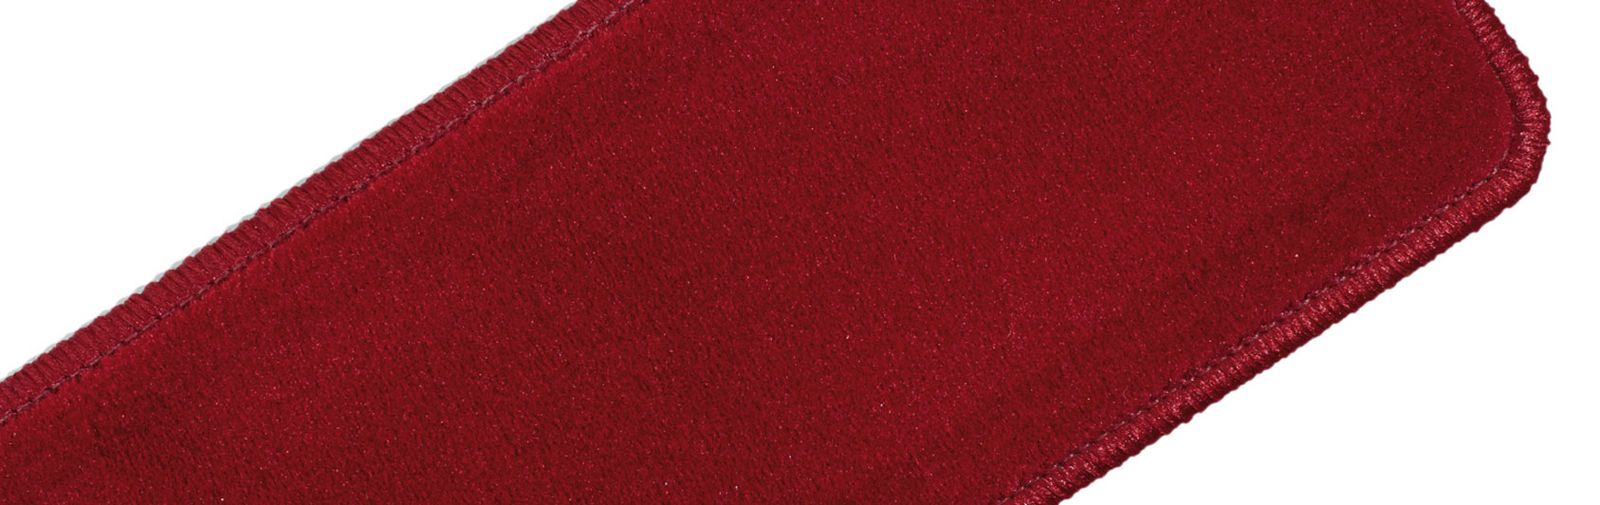 poduszki na klęczniki  tkanina welurowa uni kod koloru 611 kolor światło czerwone